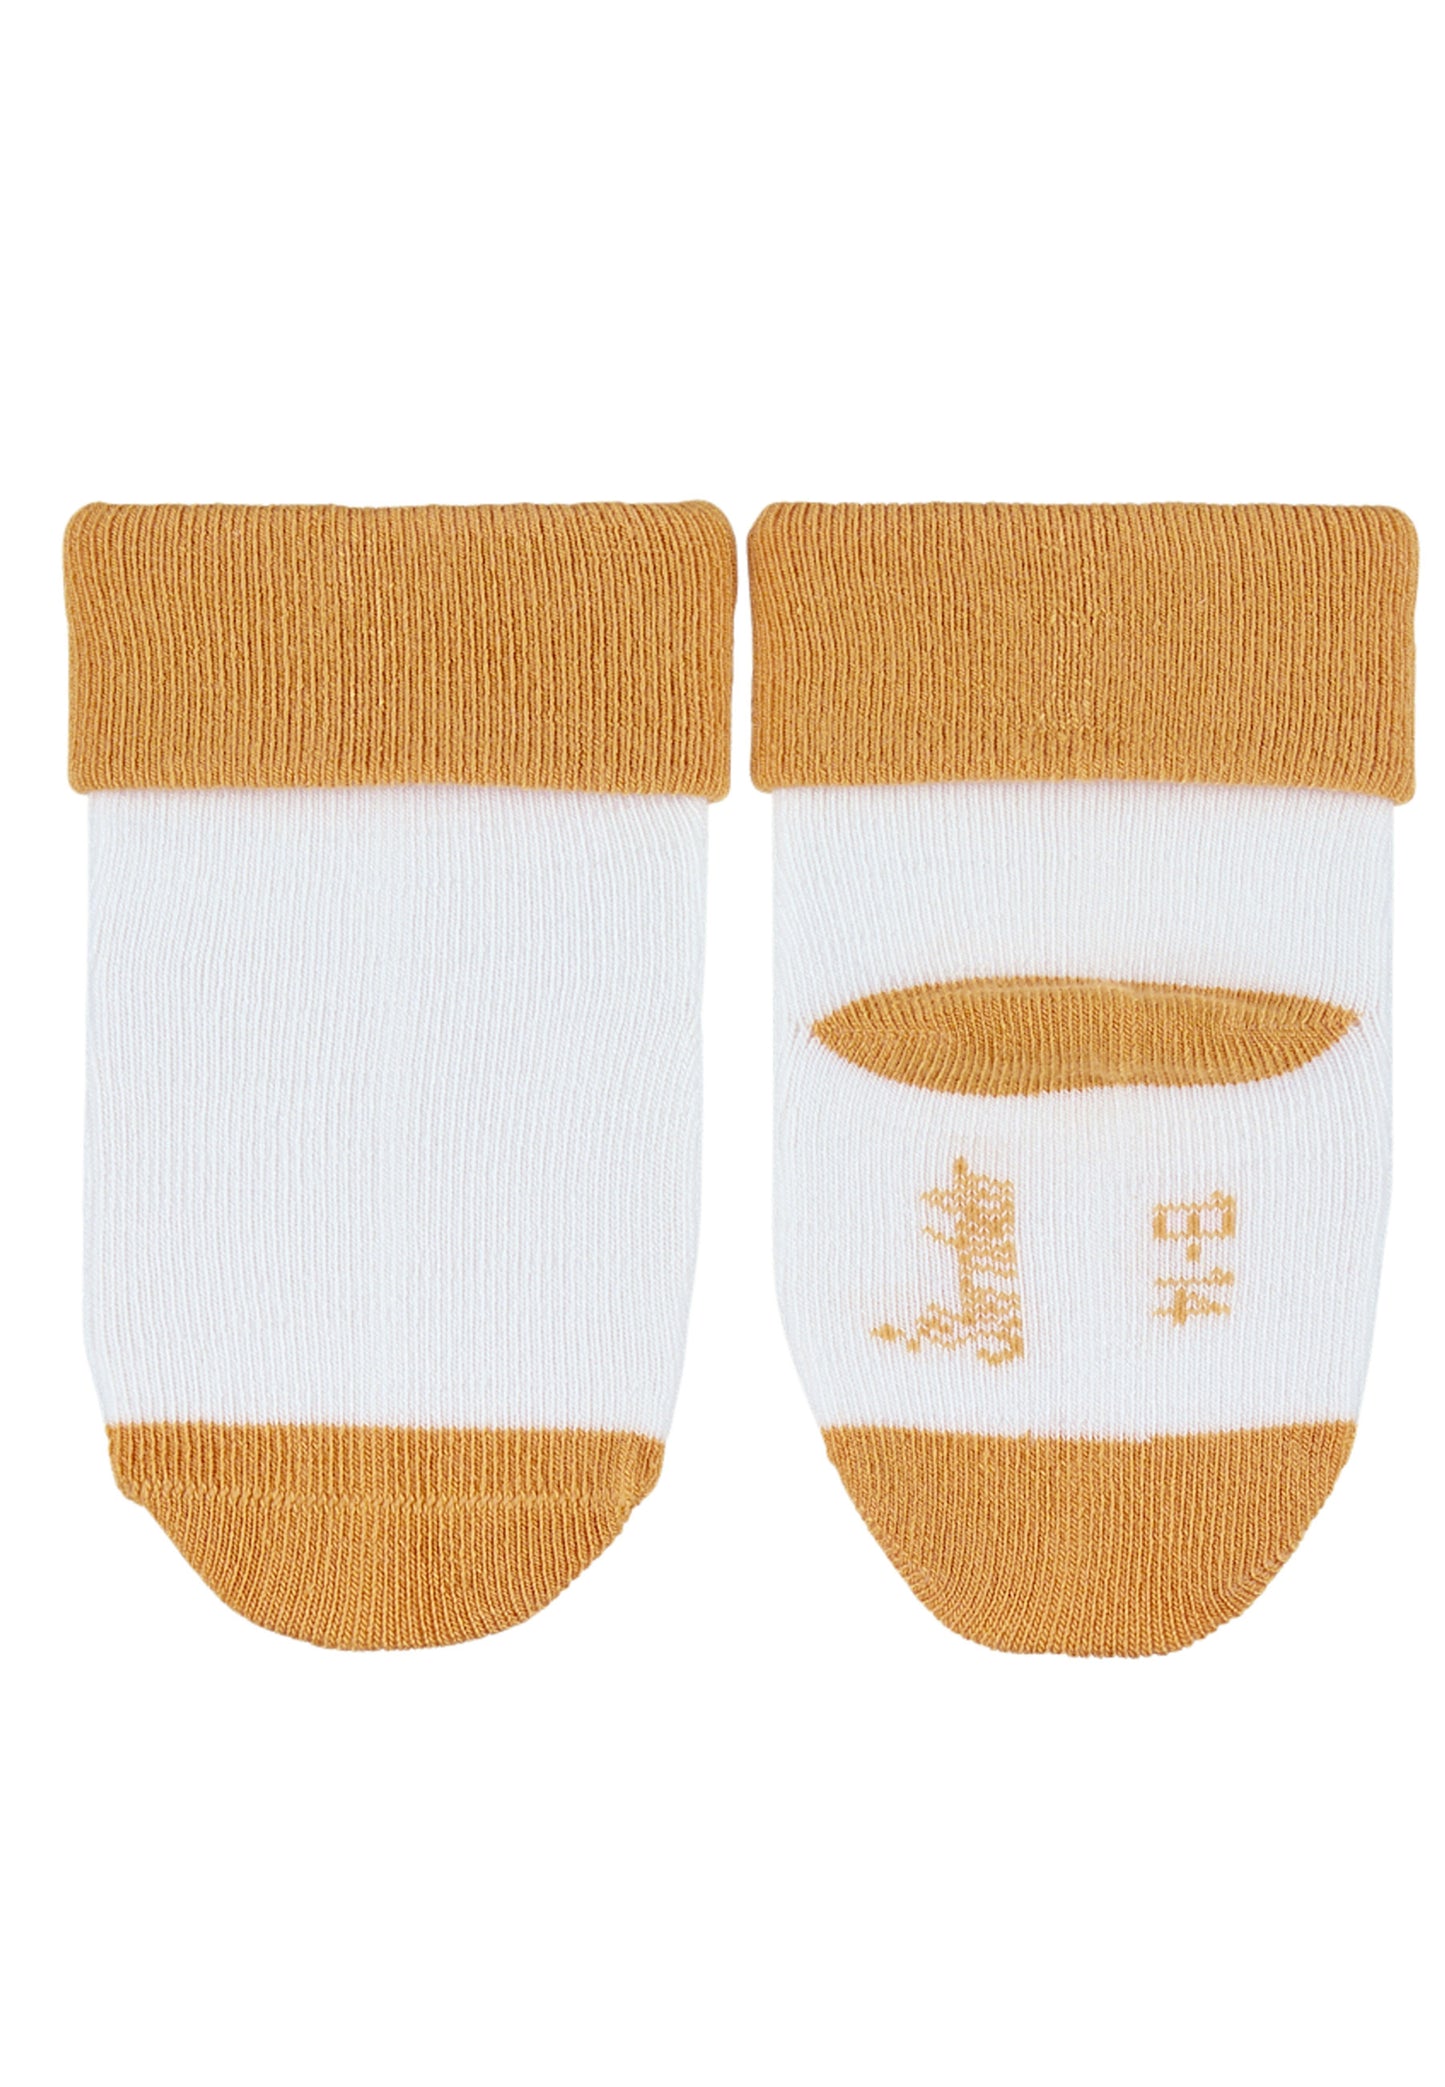 Baby-Socken Ringel, 3er-Pack